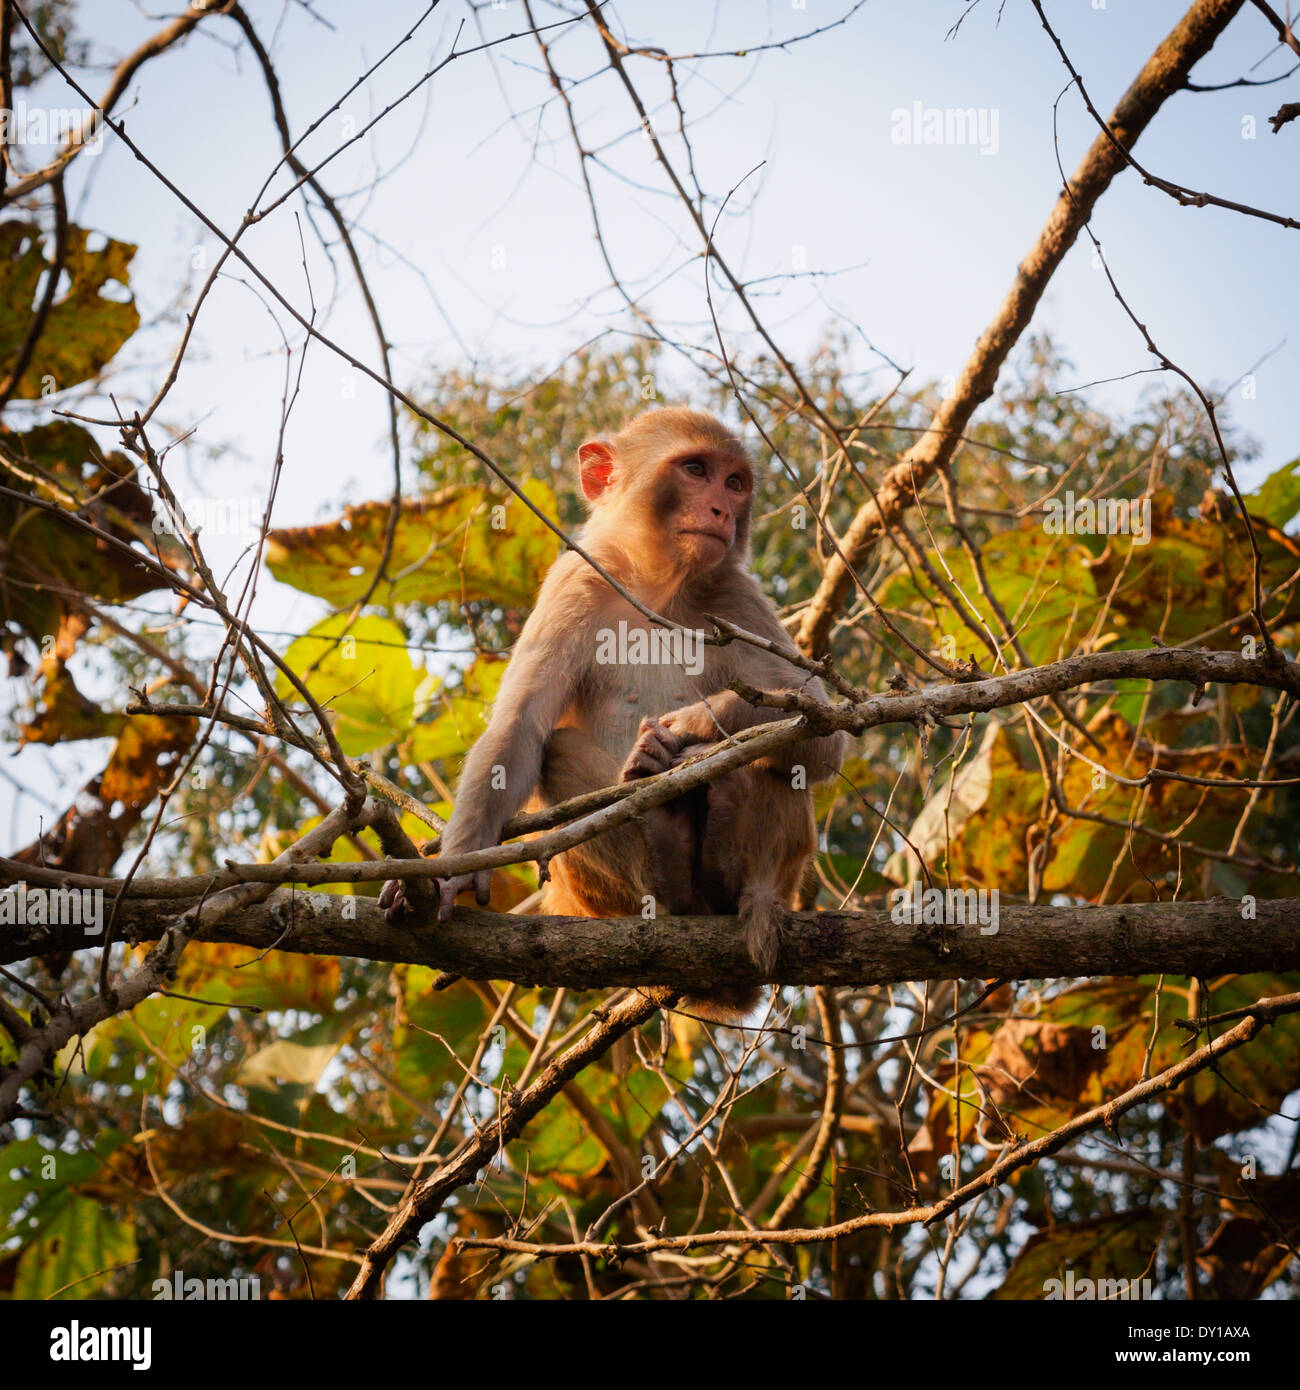 Rhesus macaque (Macaca mulatta), Nepal Stock Photo